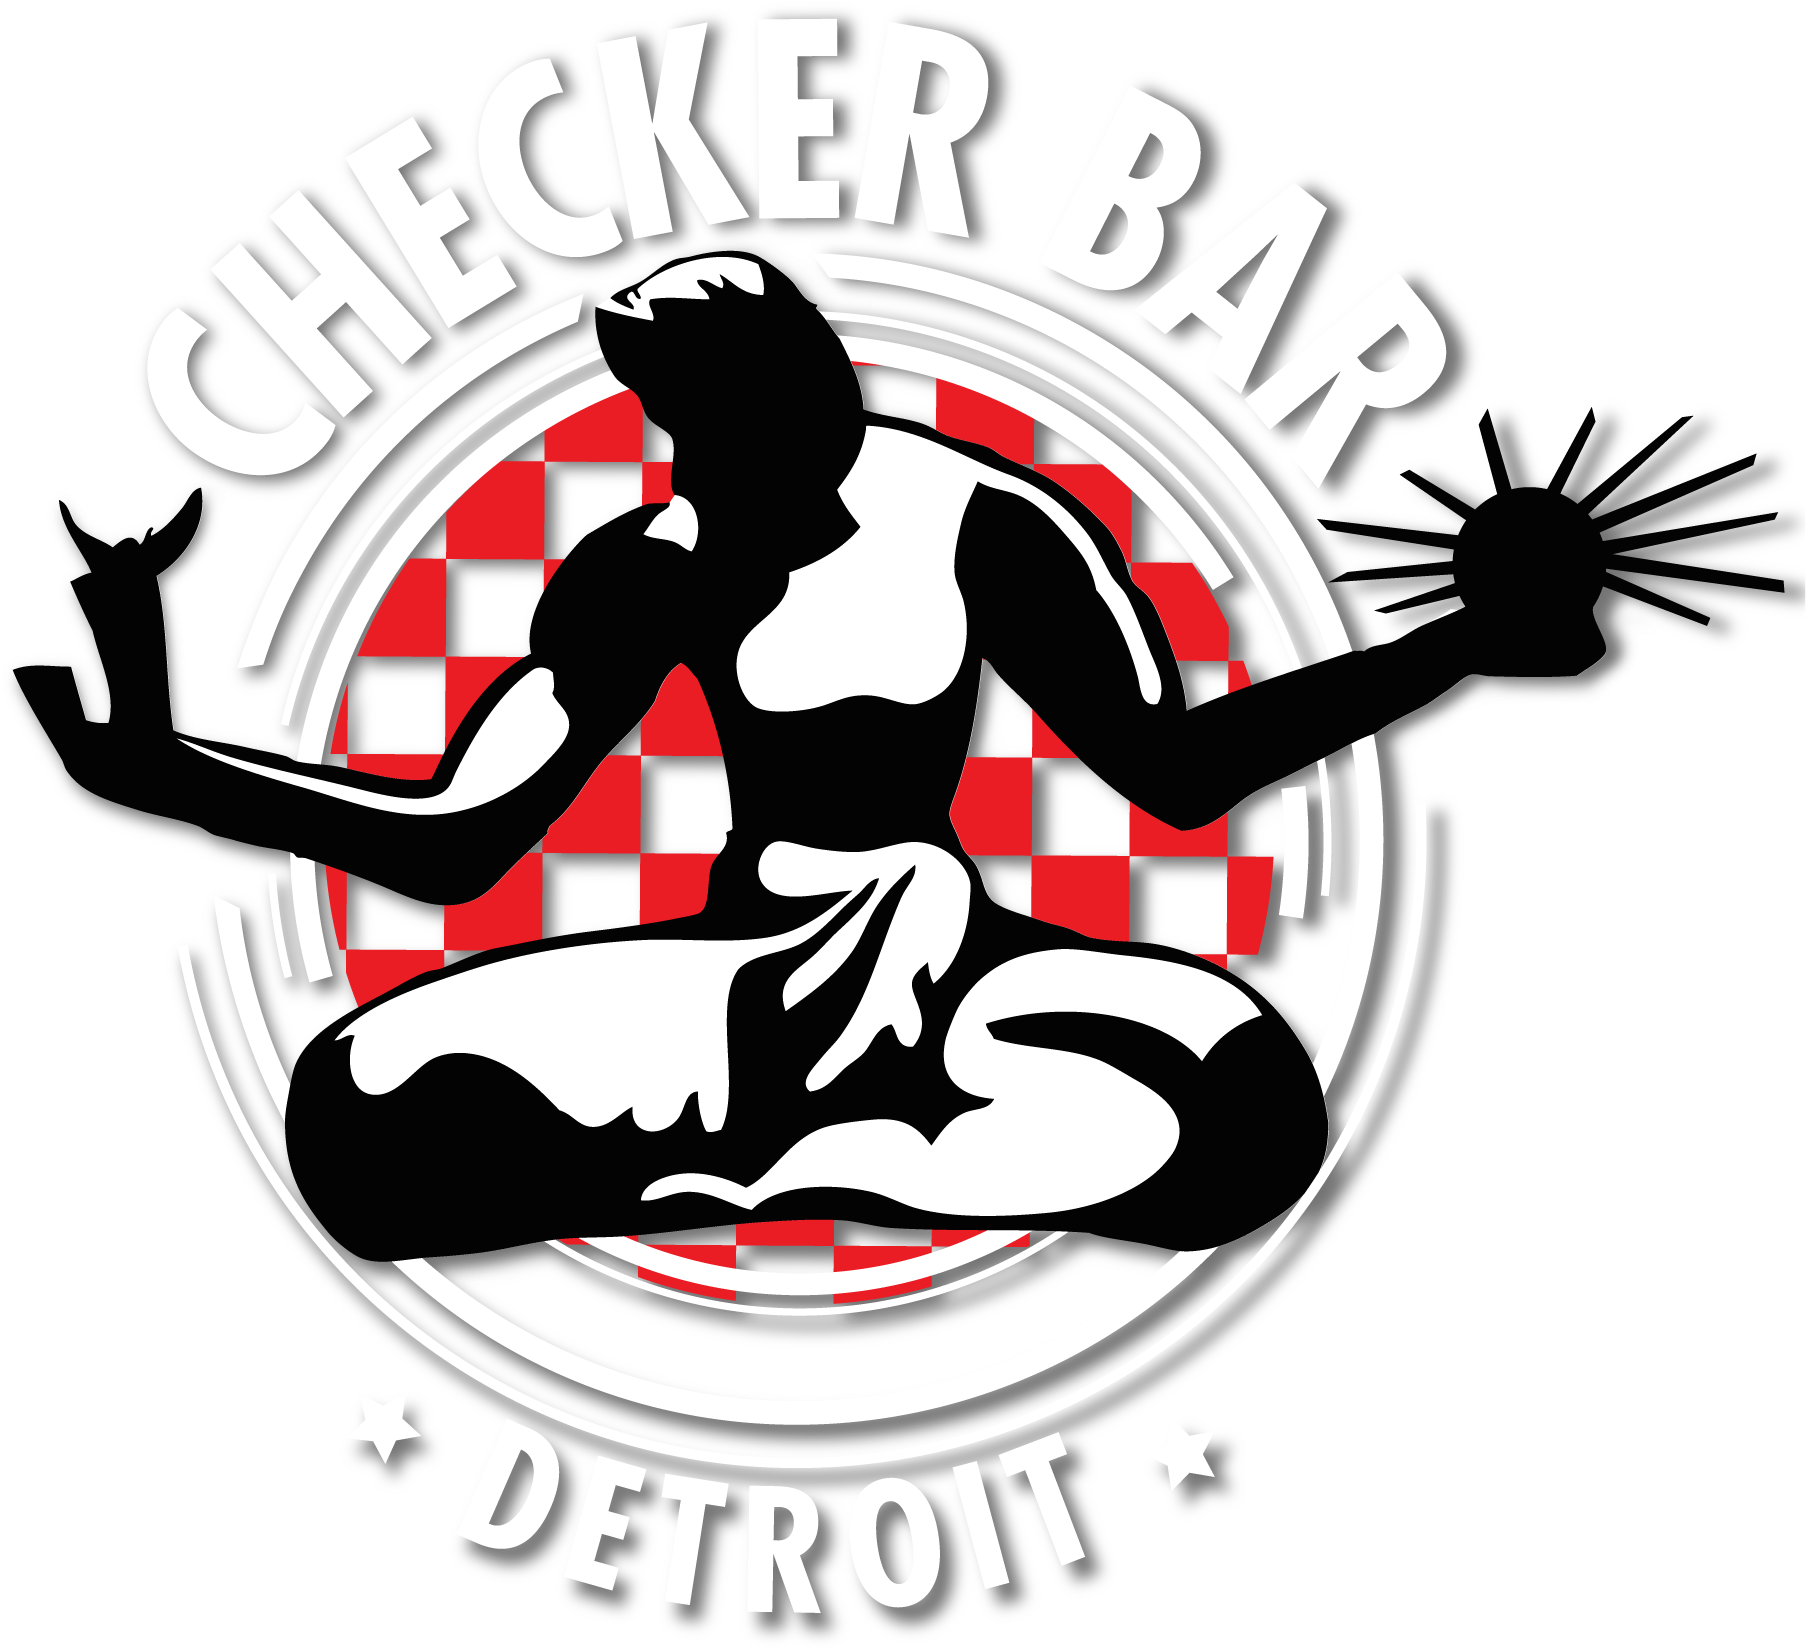 Checkers Bar Detroit (1983x1701)